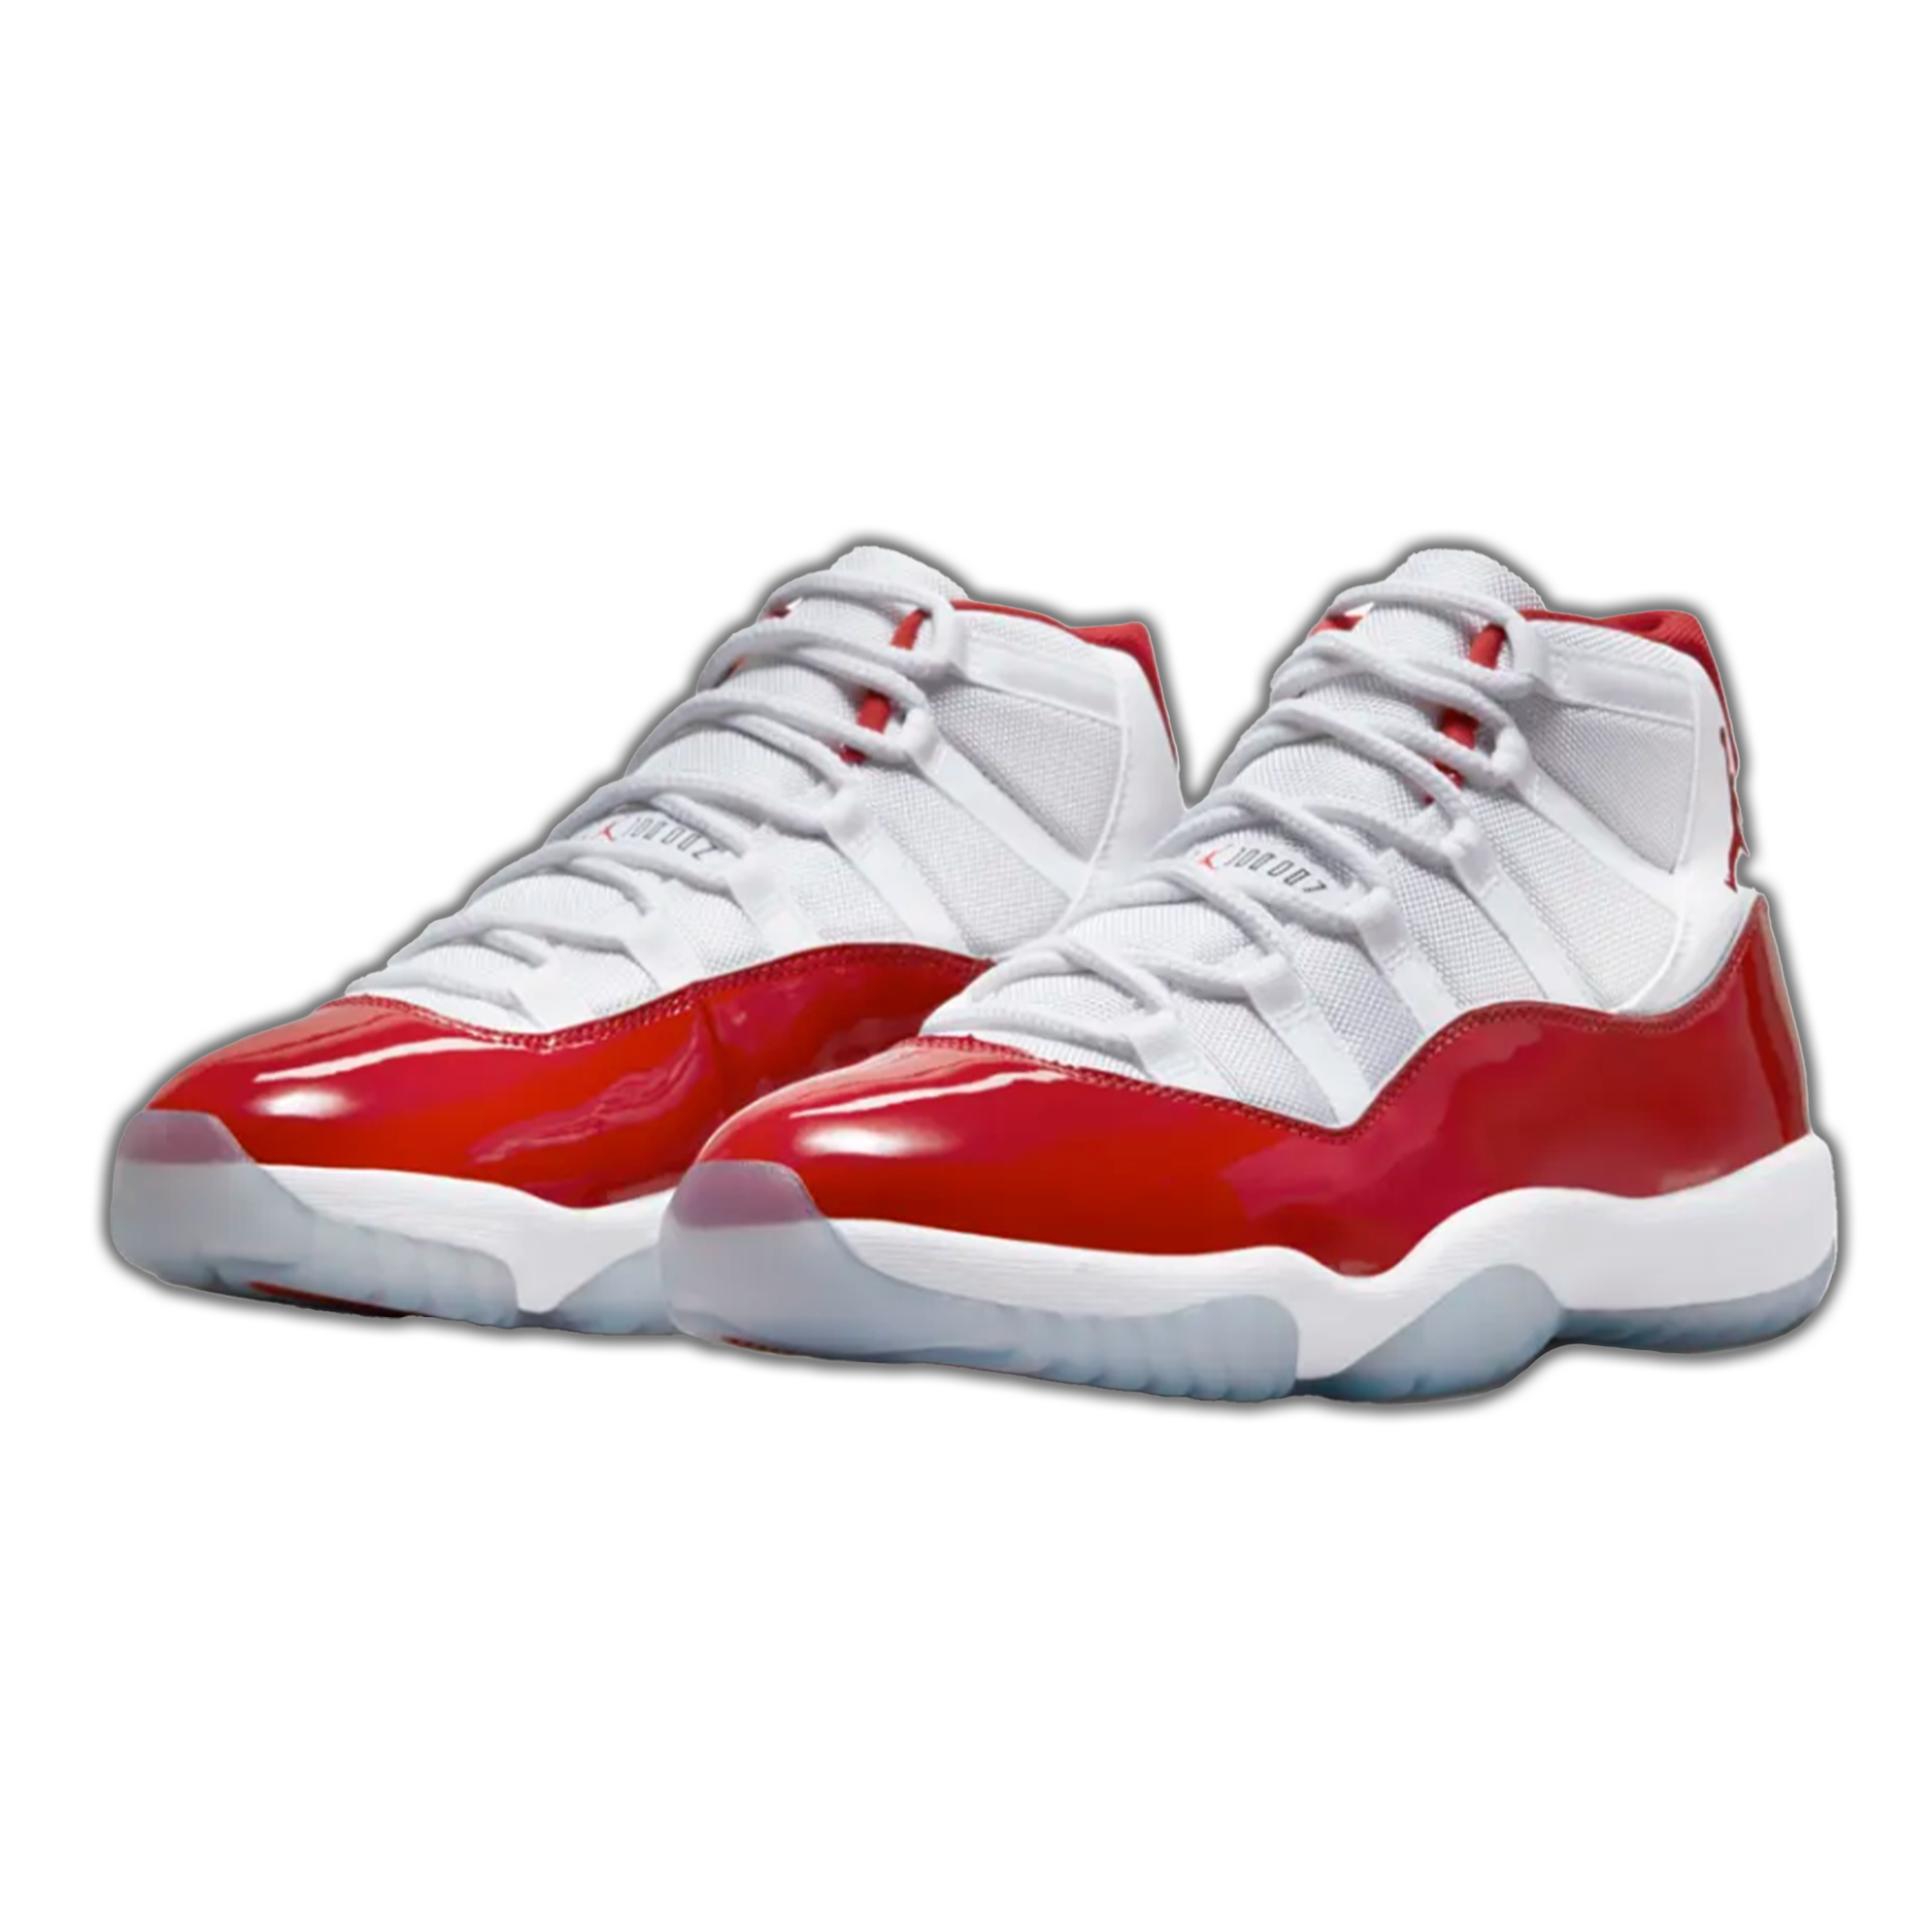 Jordan 11 Retro - "Cherry"